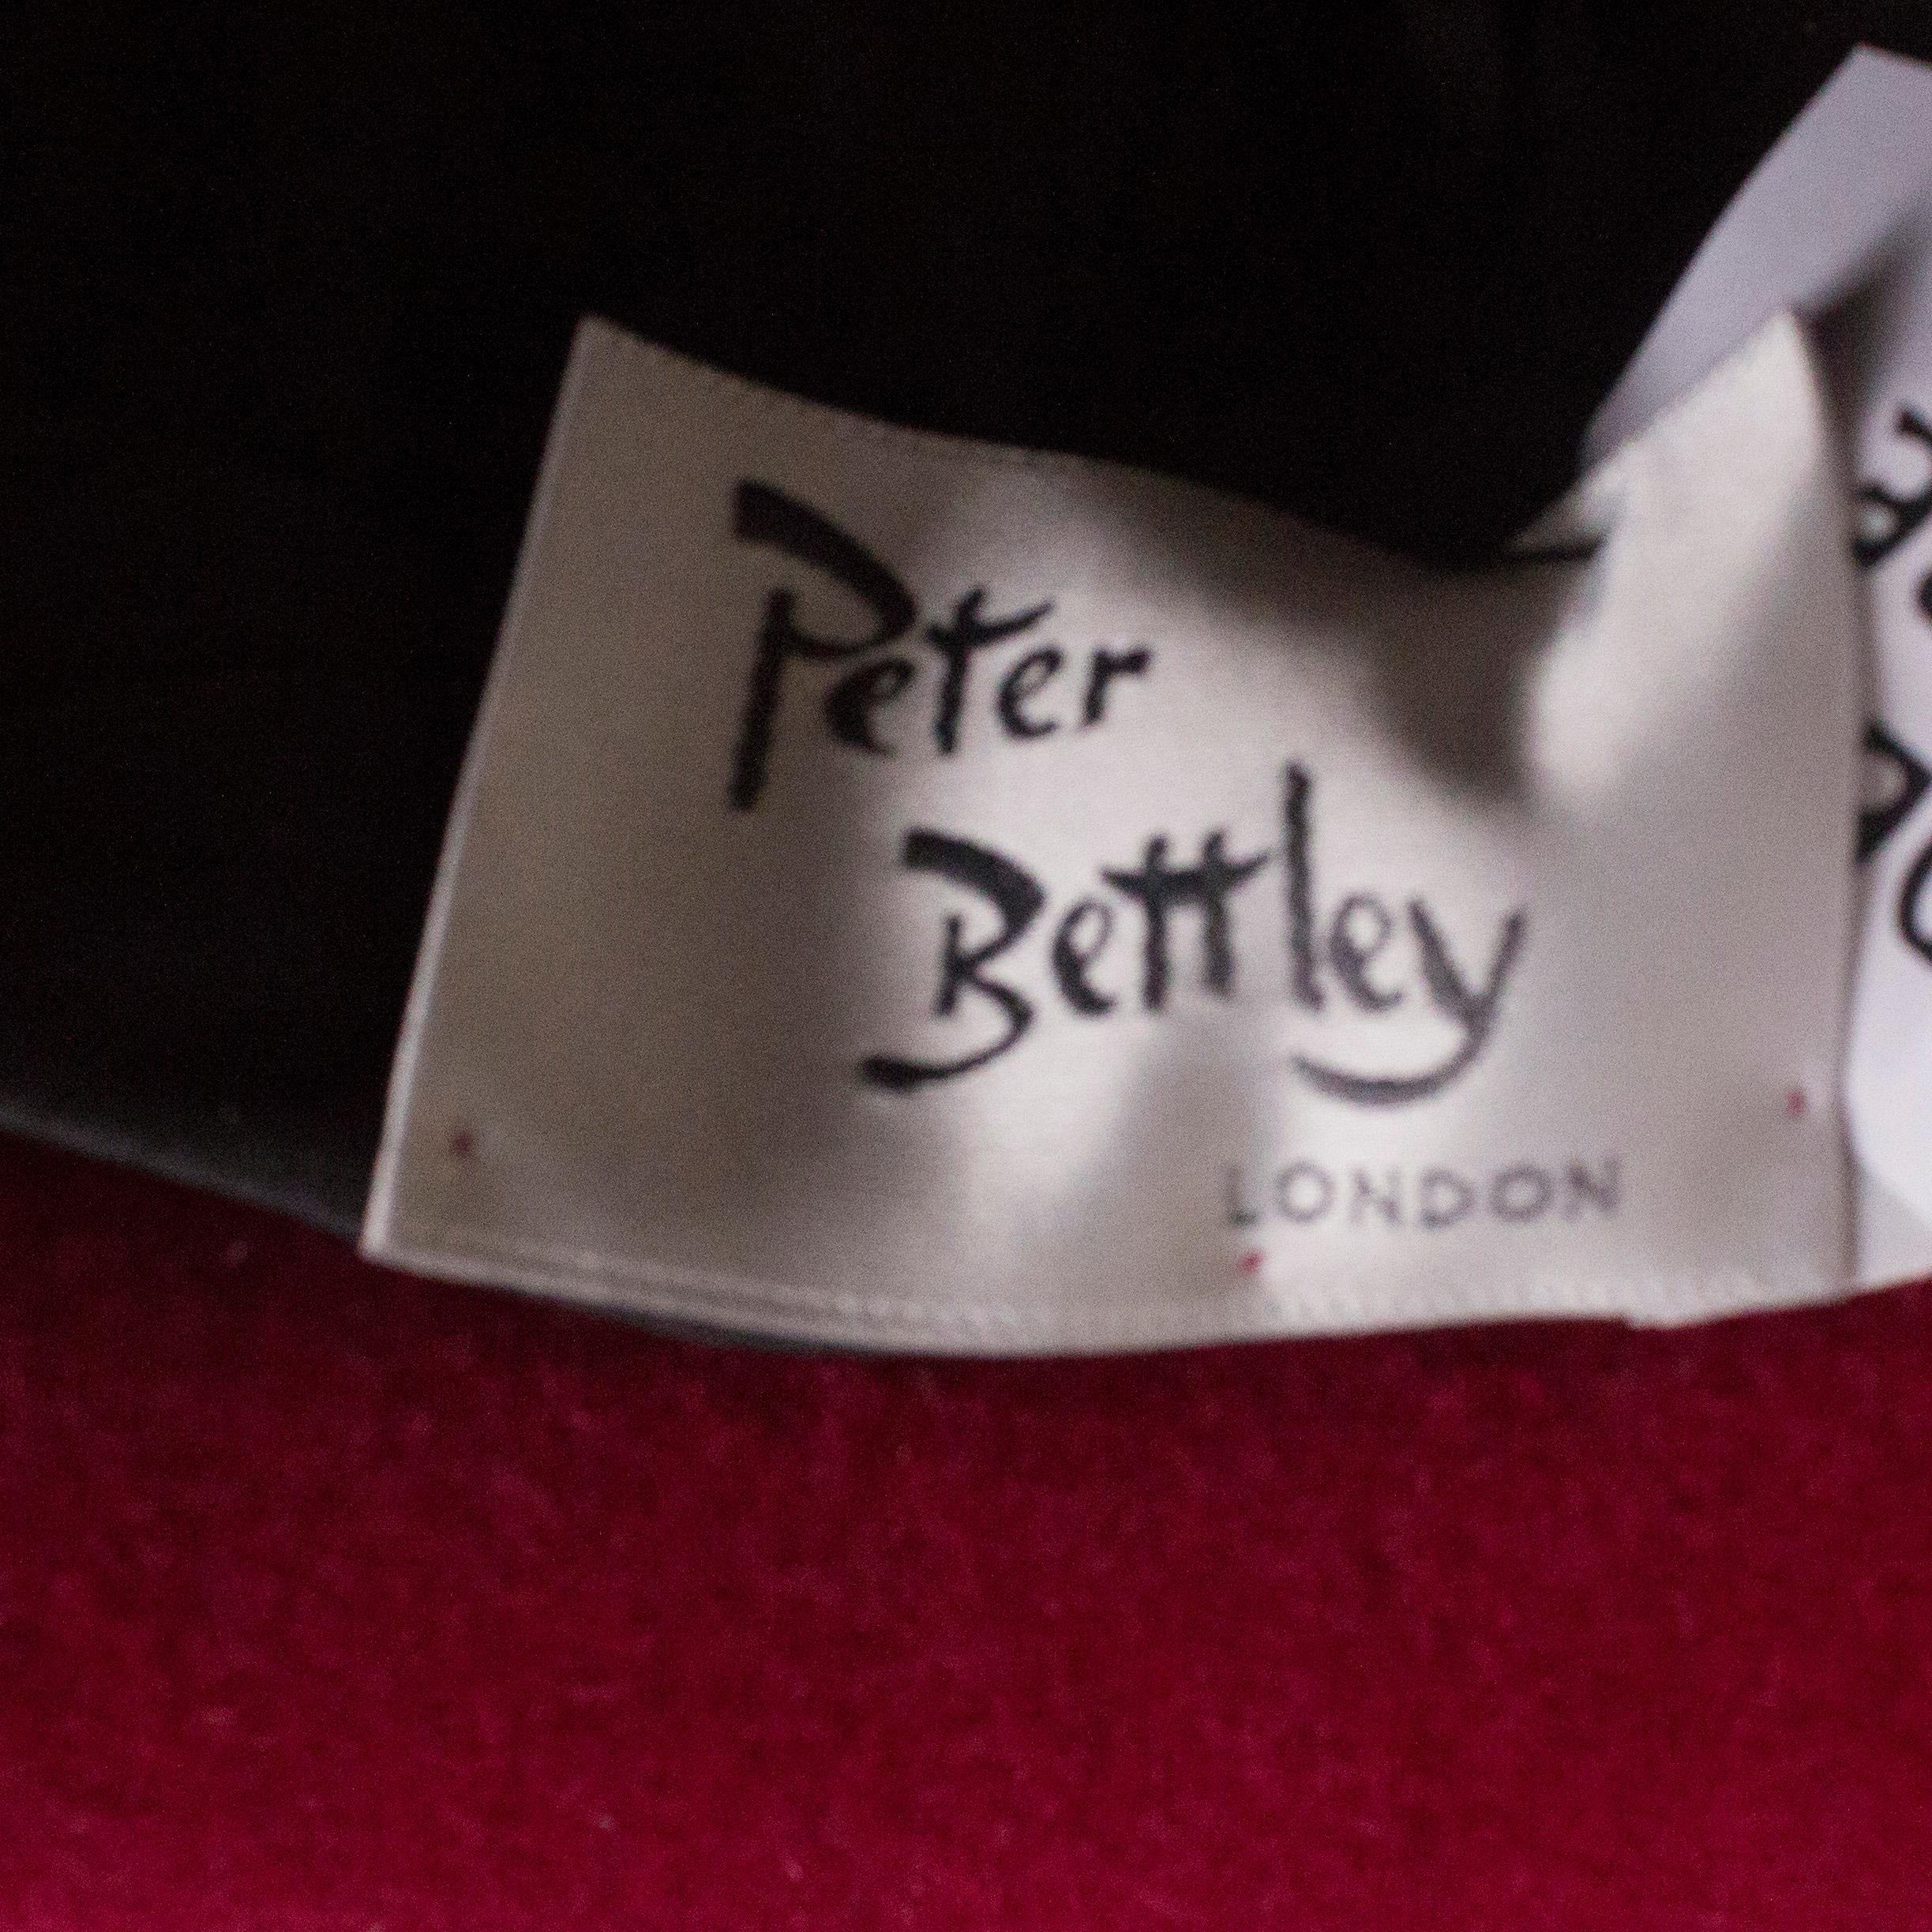 peter bettley womens hat